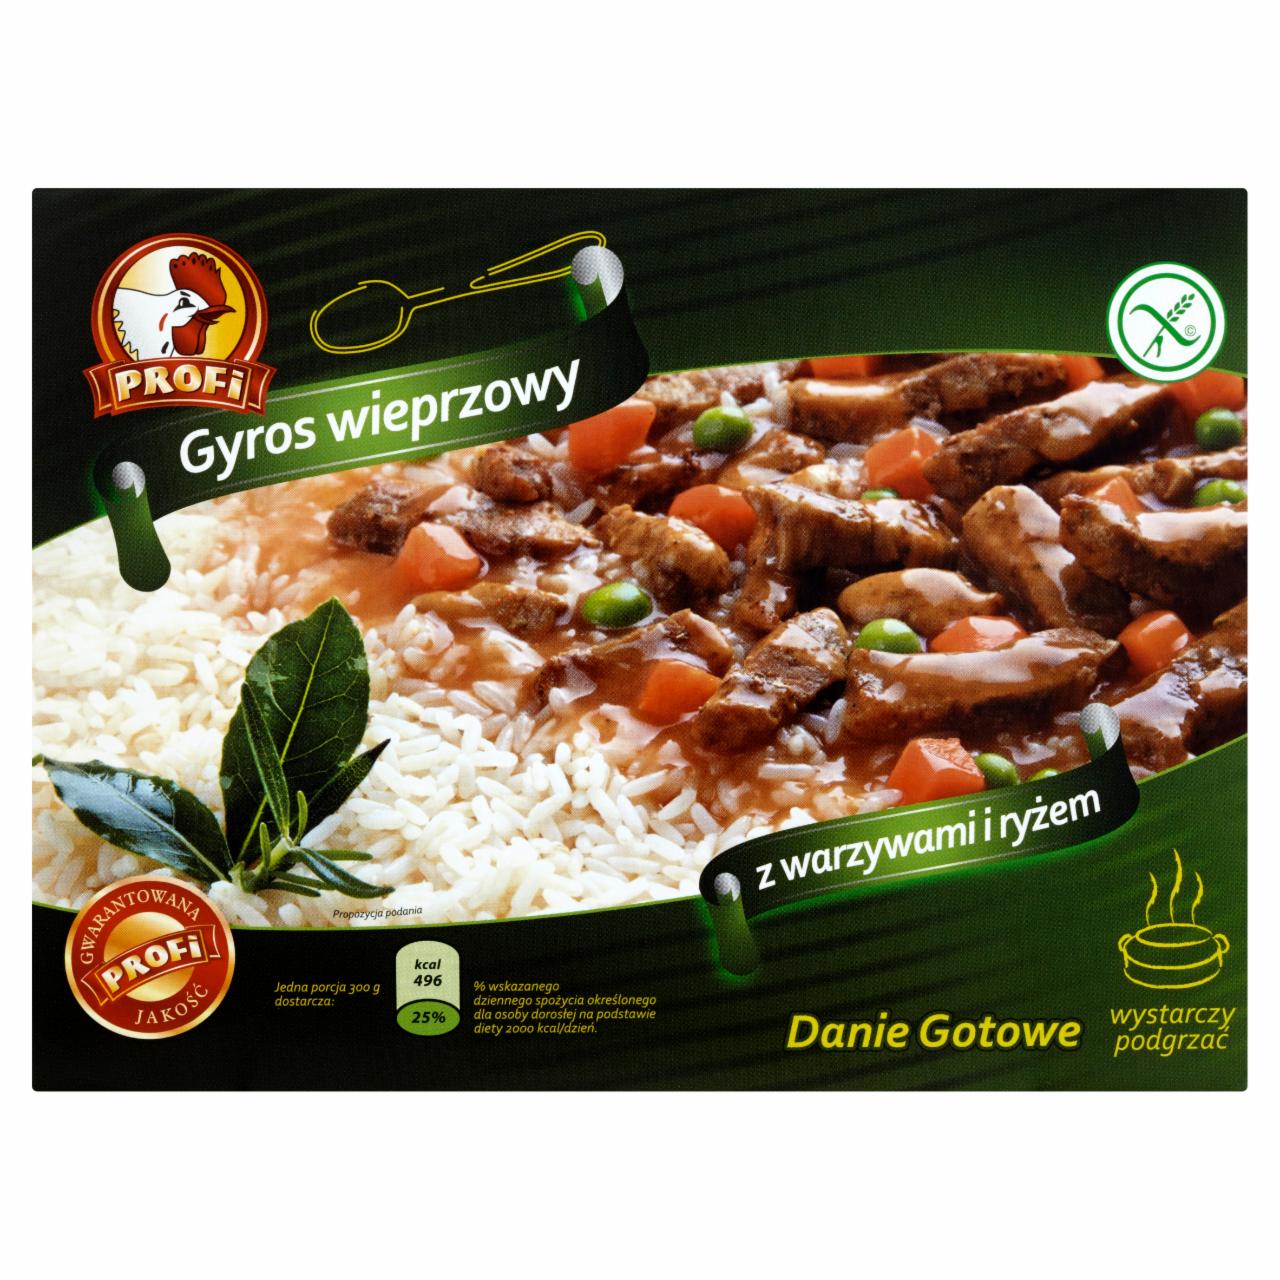 Zdjęcia - Profi Gyros wieprzowy z warzywami i ryżem 300 g